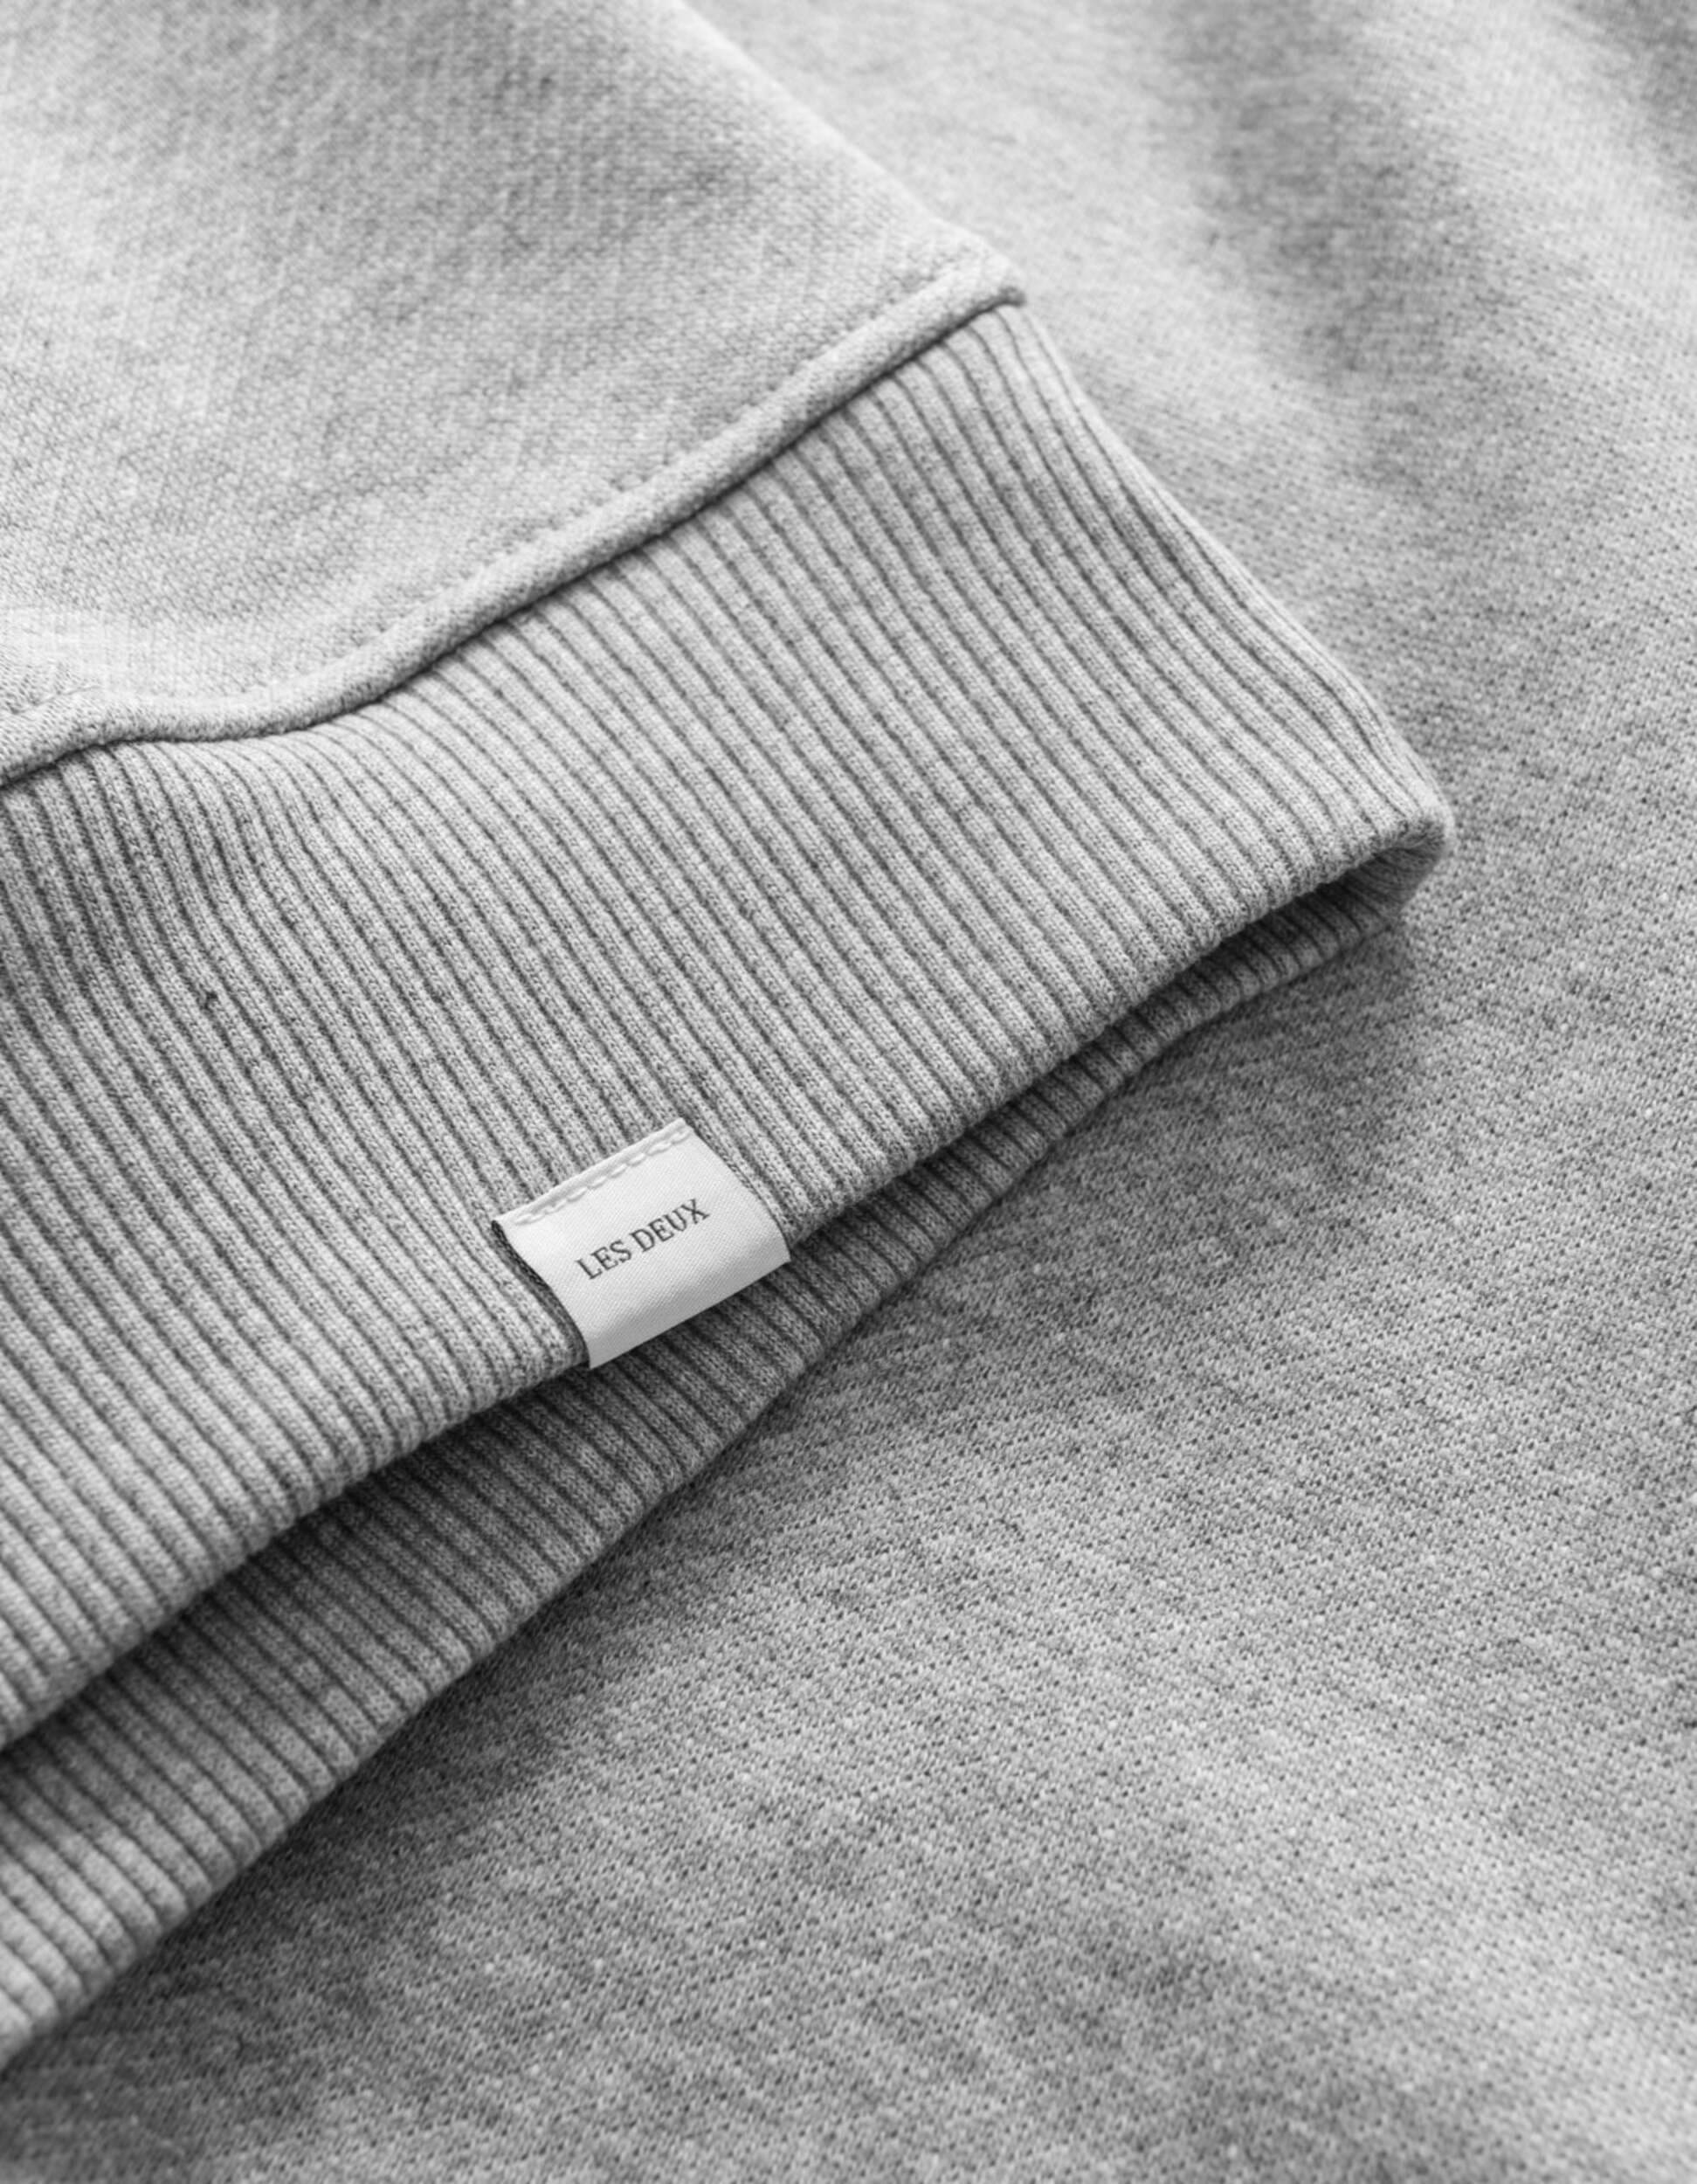 Sweatshirt de la marque Les Deux Crew couleur gris mélangé pour homme logo